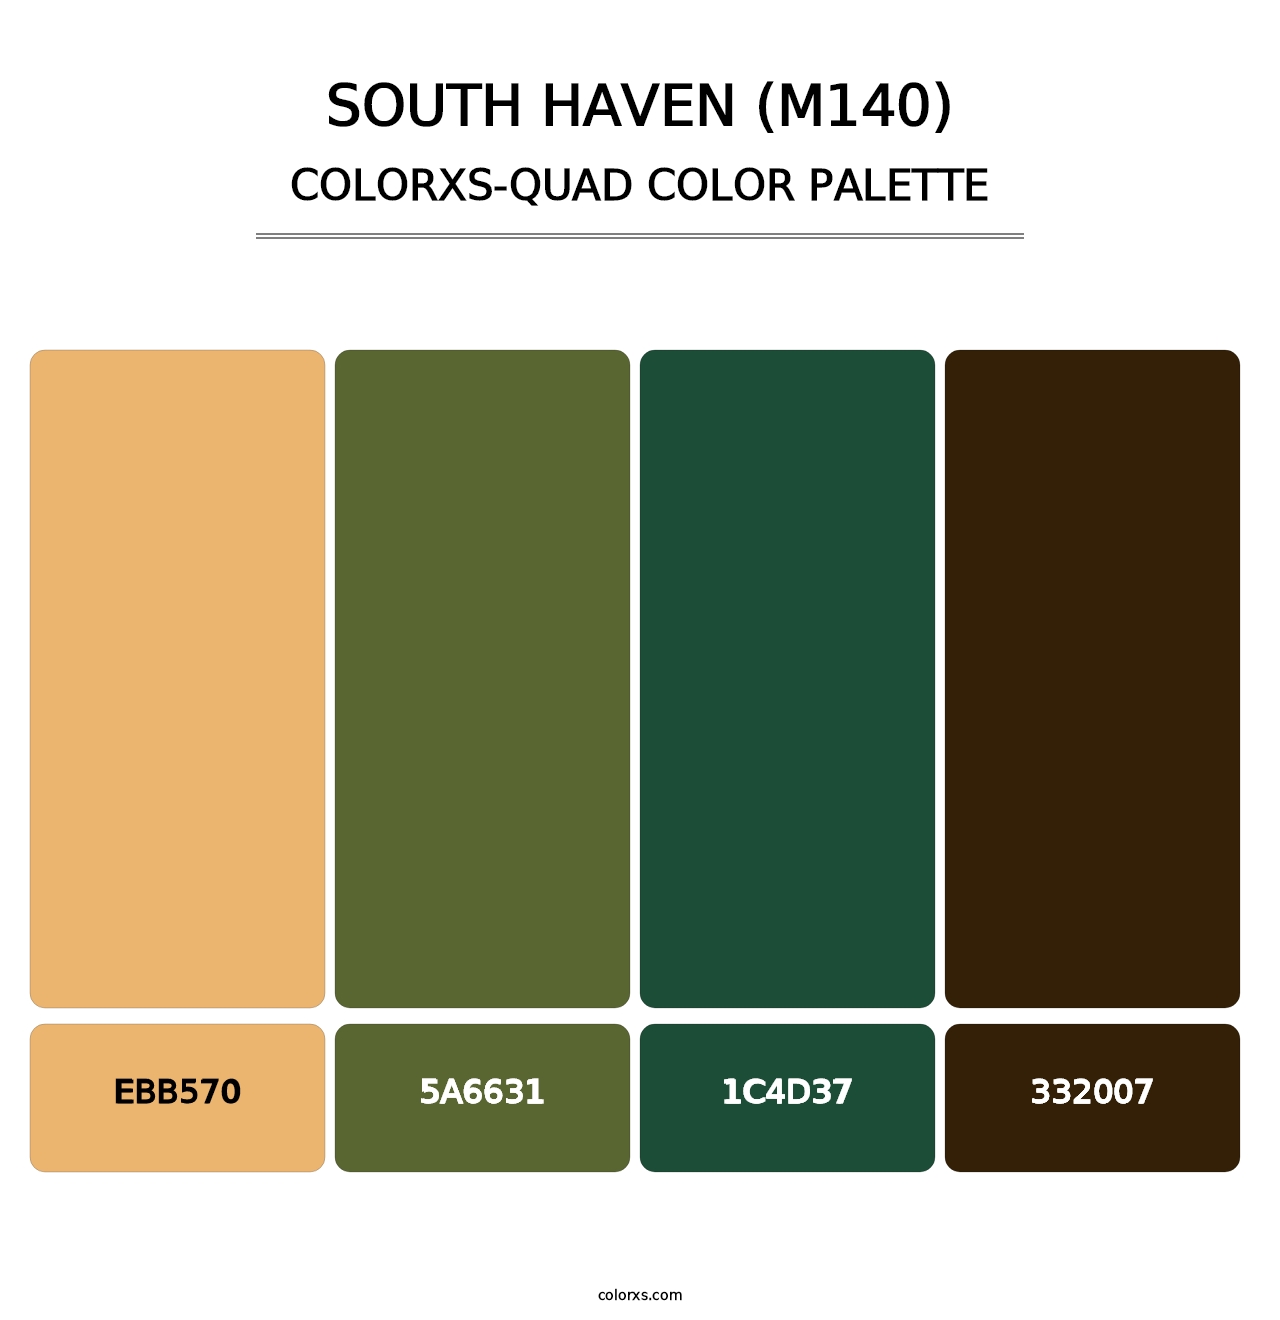 South Haven (M140) - Colorxs Quad Palette